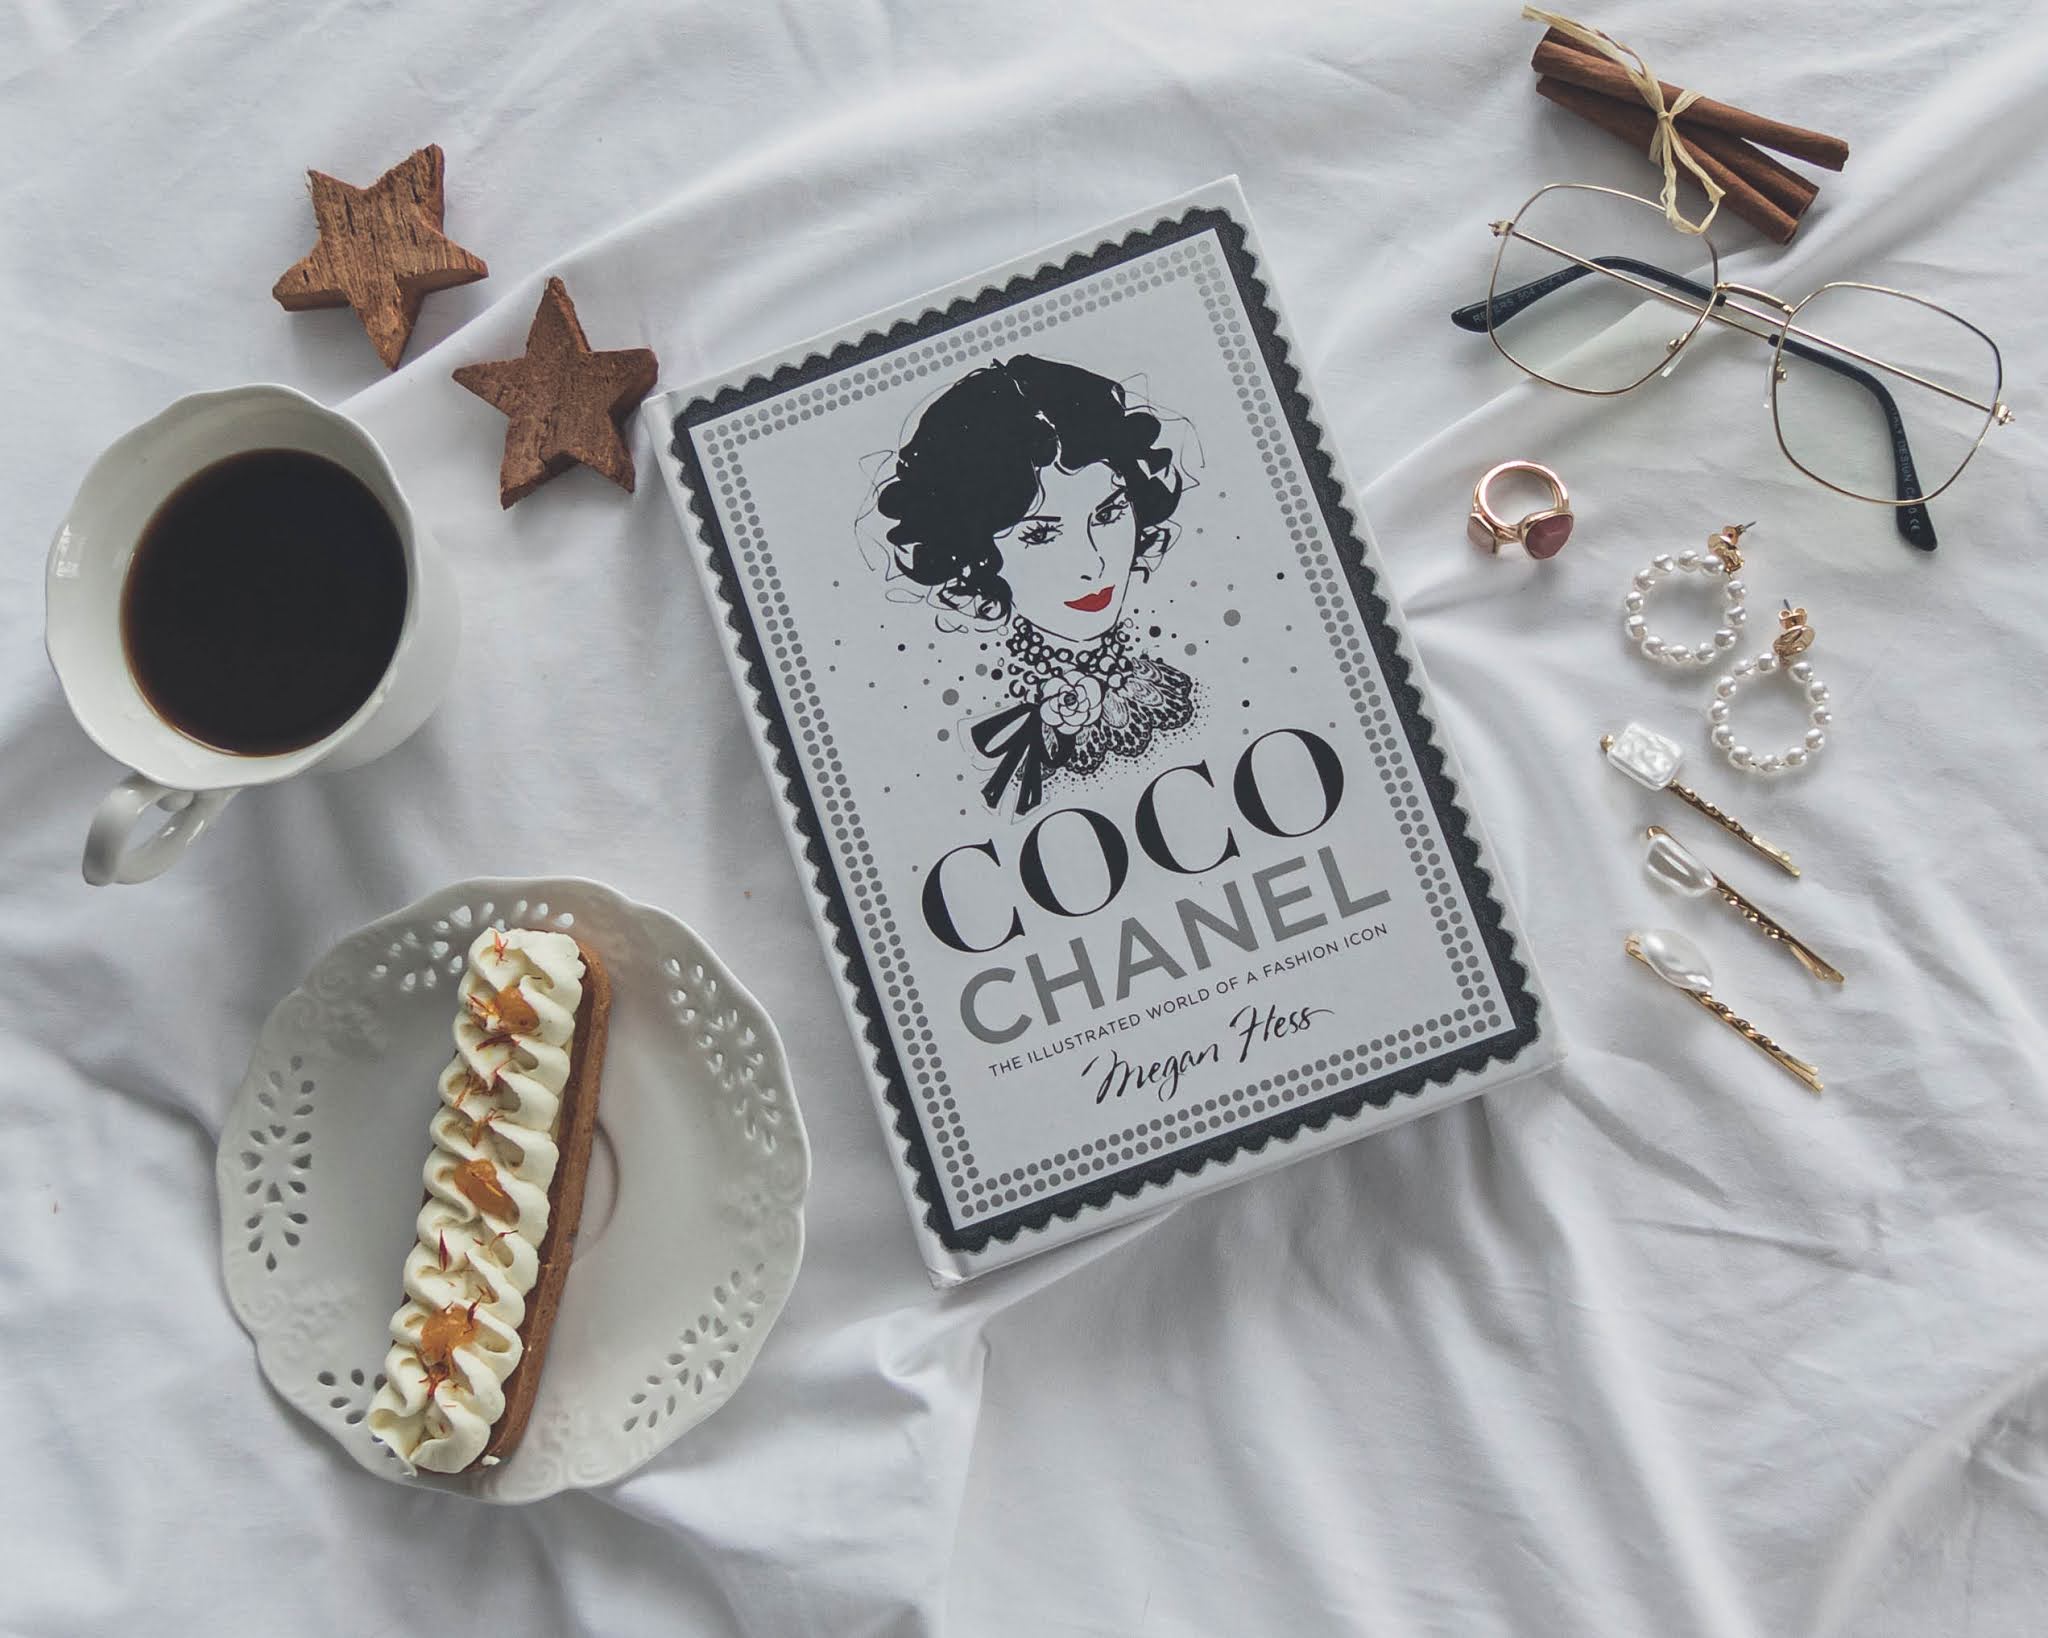 Coco Chanel Krótka historia największej dyktatorki mody  Renata Pawlak   książka w tezeuszpl książki promocje używane książki nowości wydawnicze